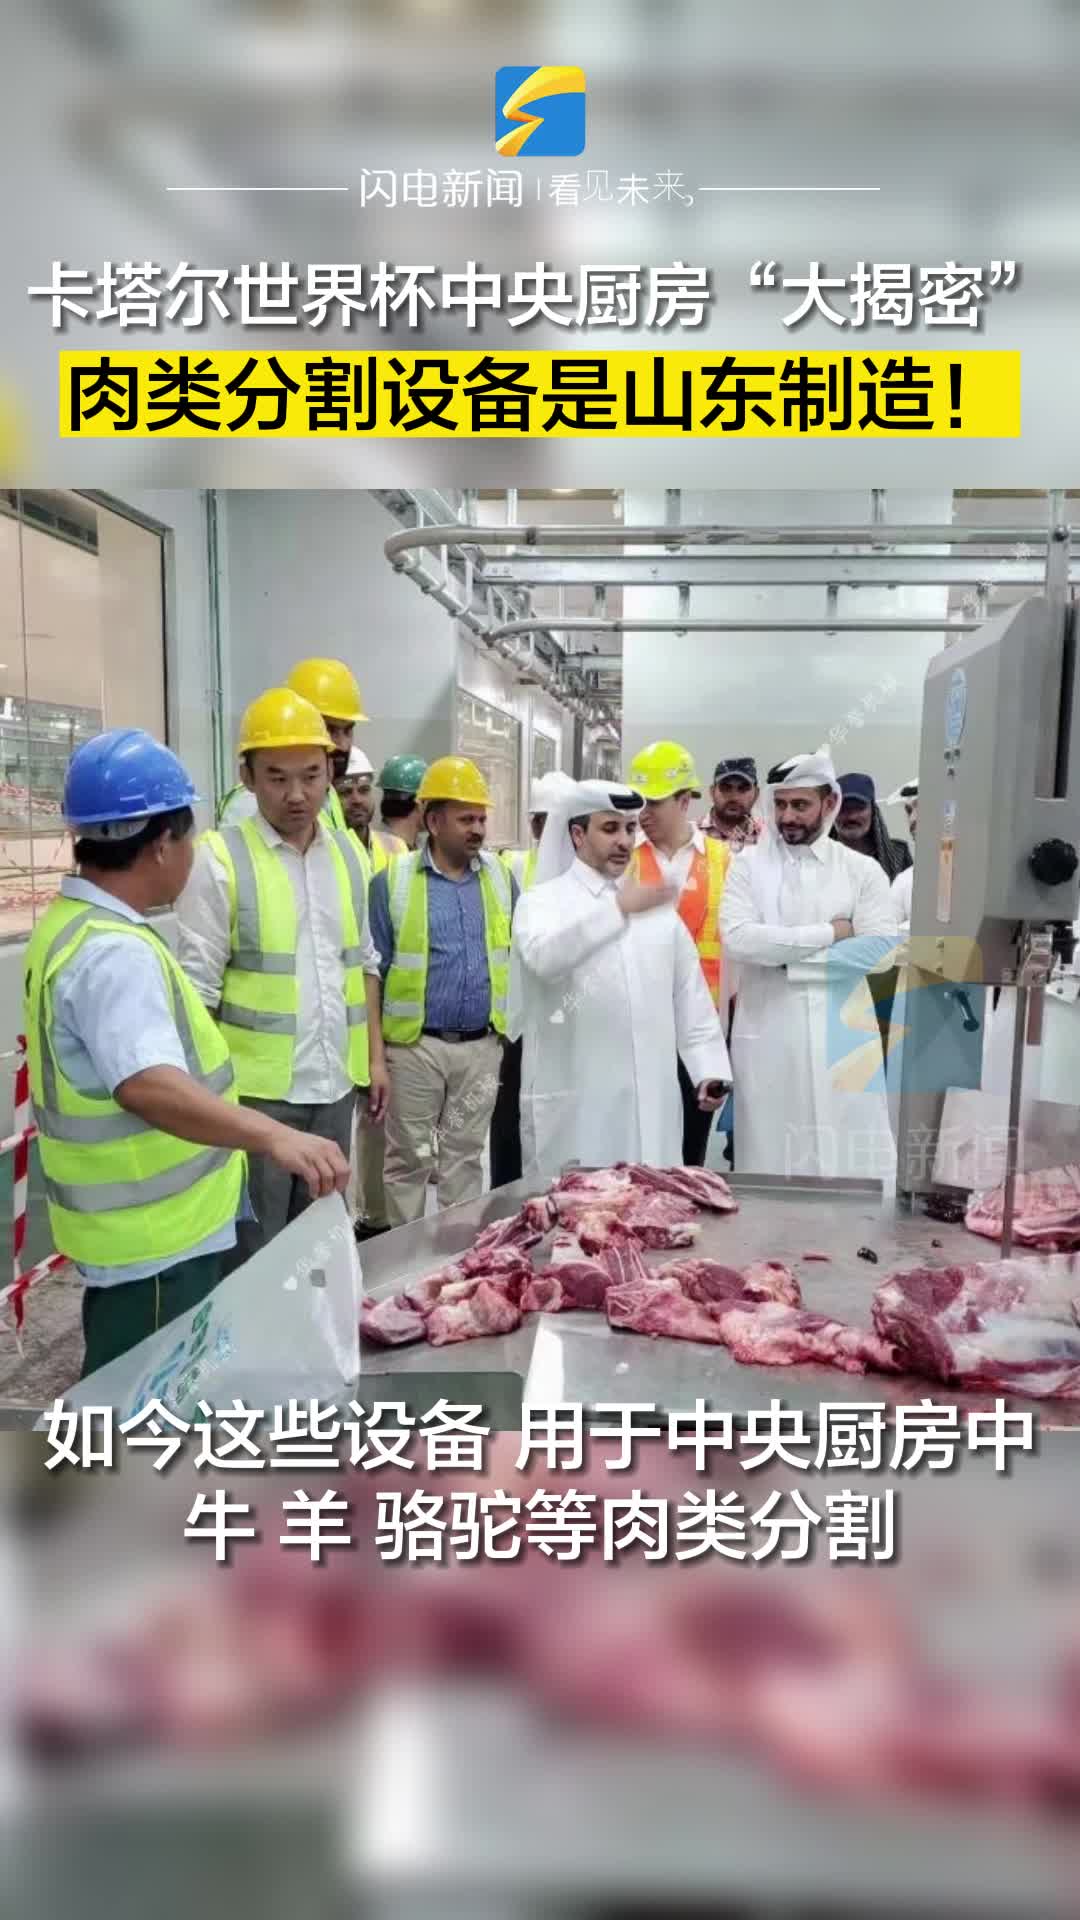 卡塔尔世界杯中央厨房“大揭密” 肉类分割设备来自山东